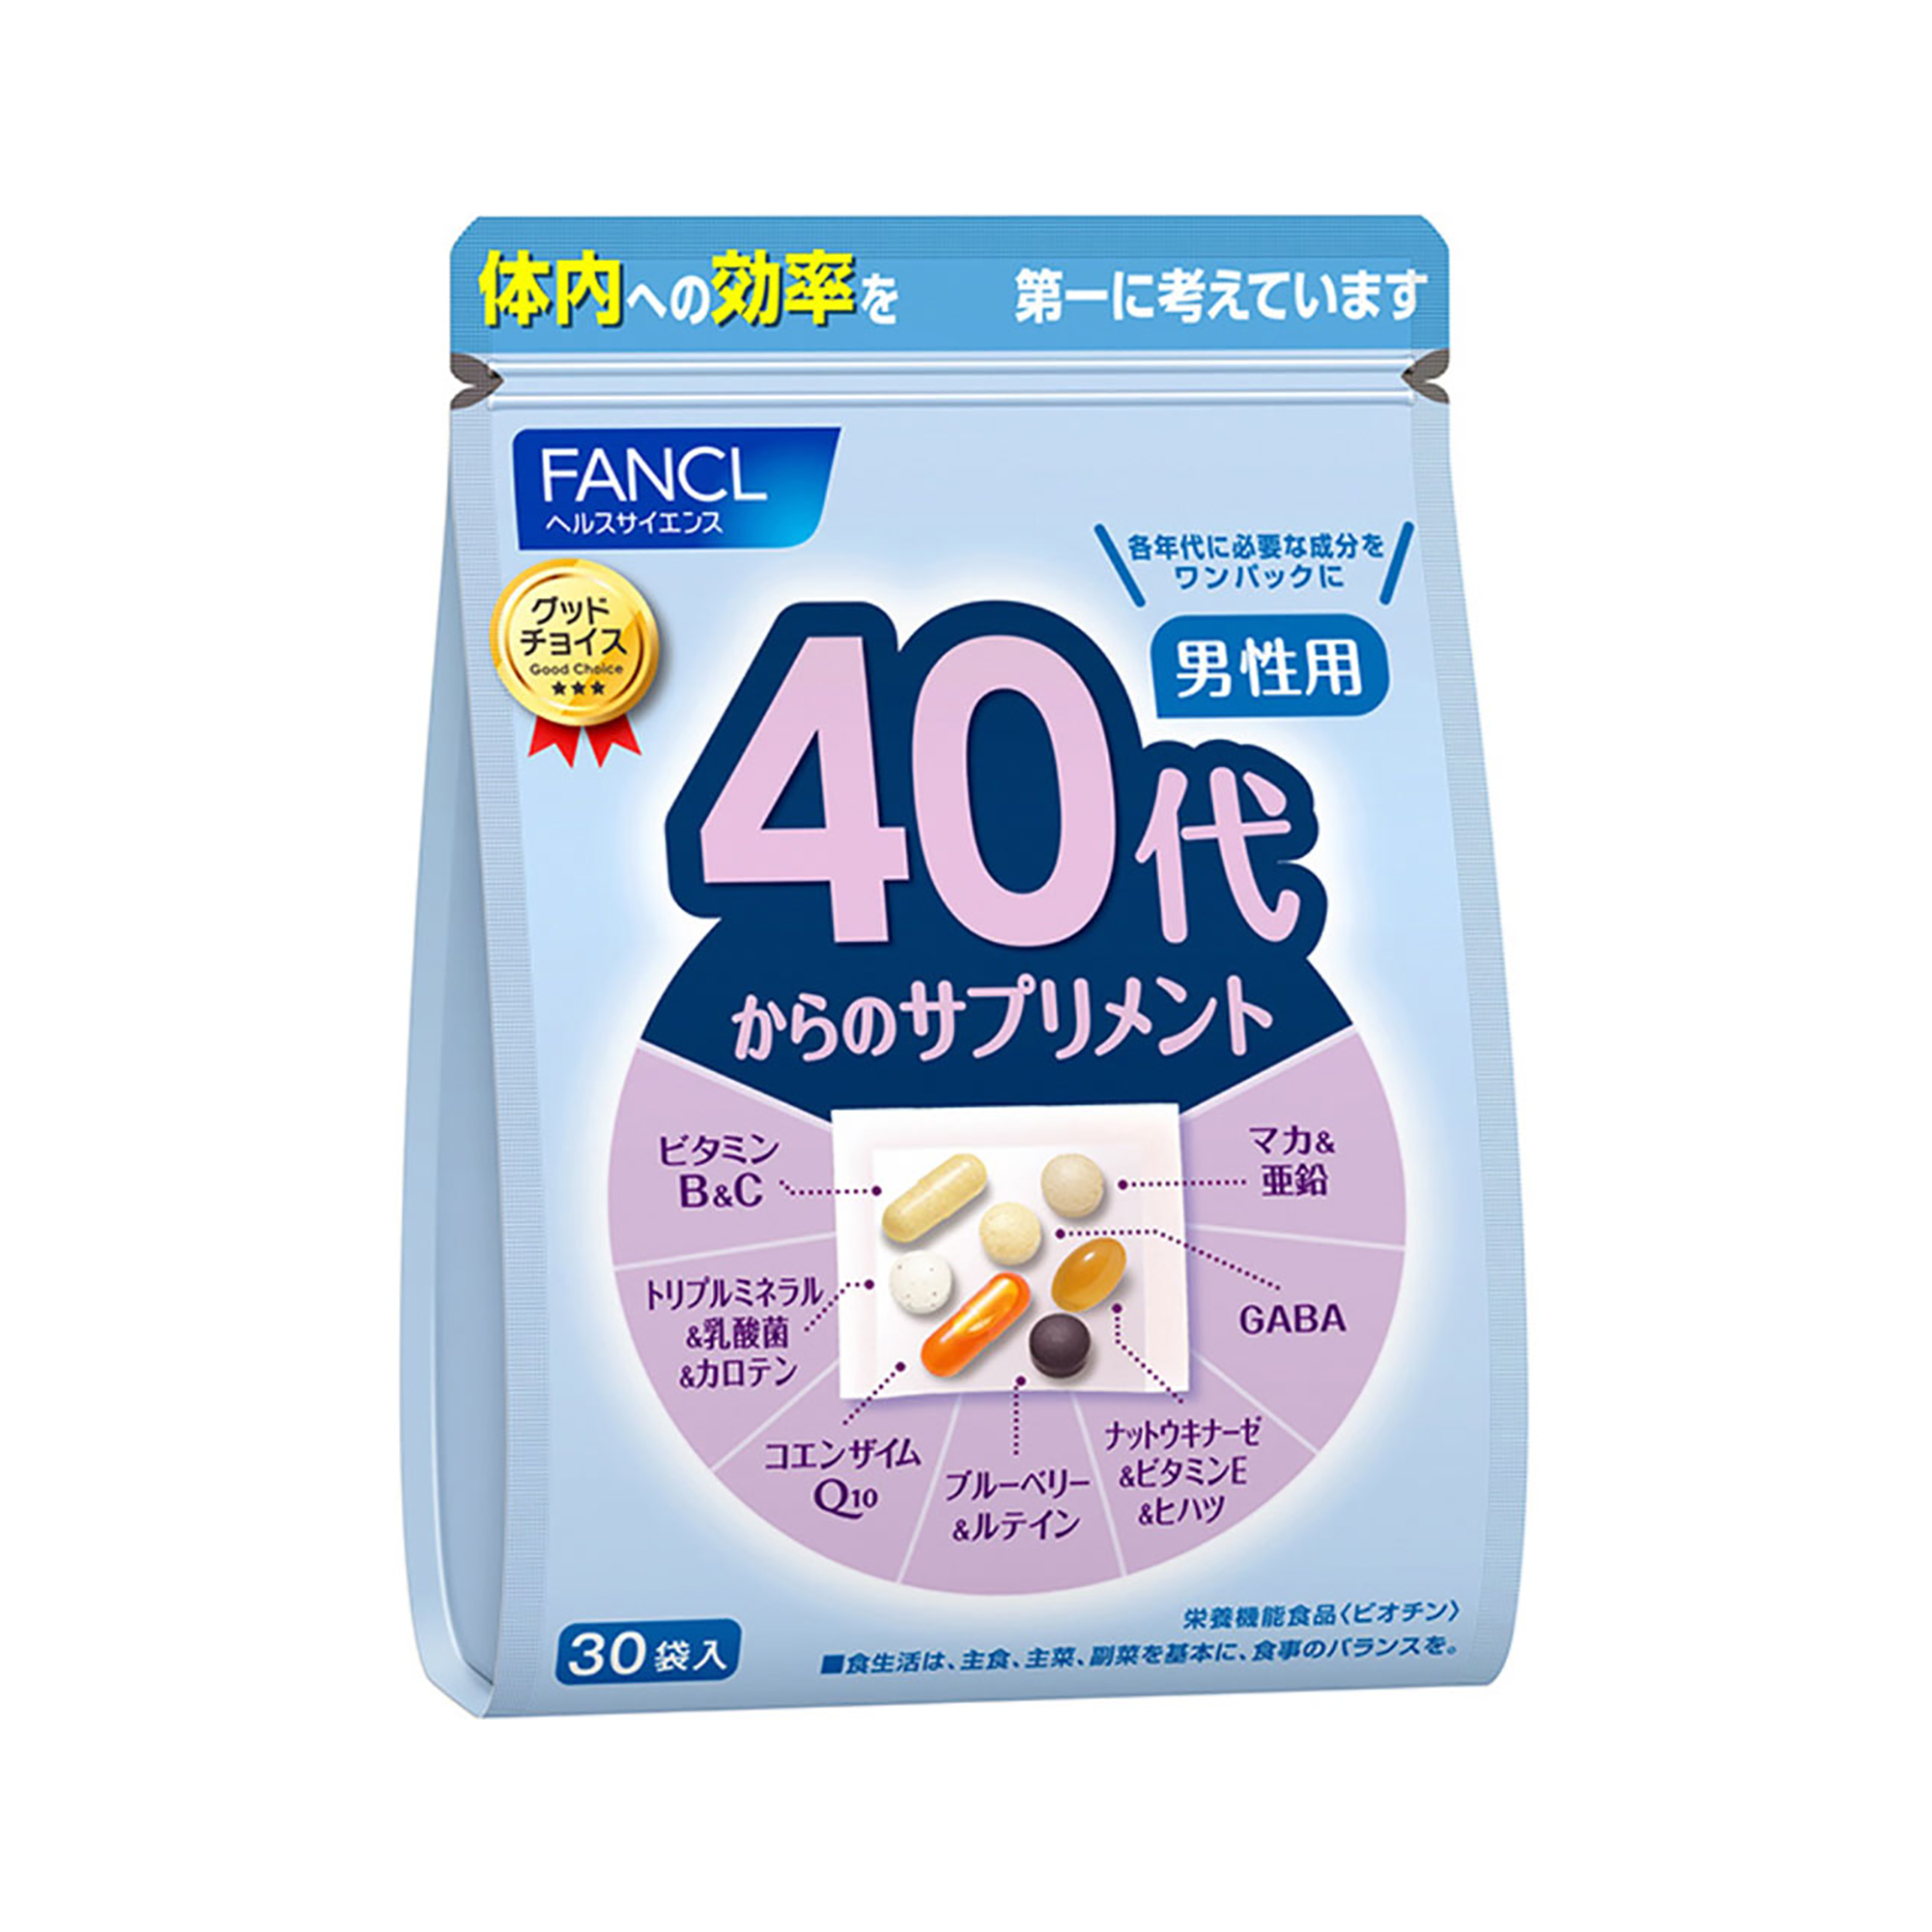 FANCL 40代男性综合营养包 7粒×30袋